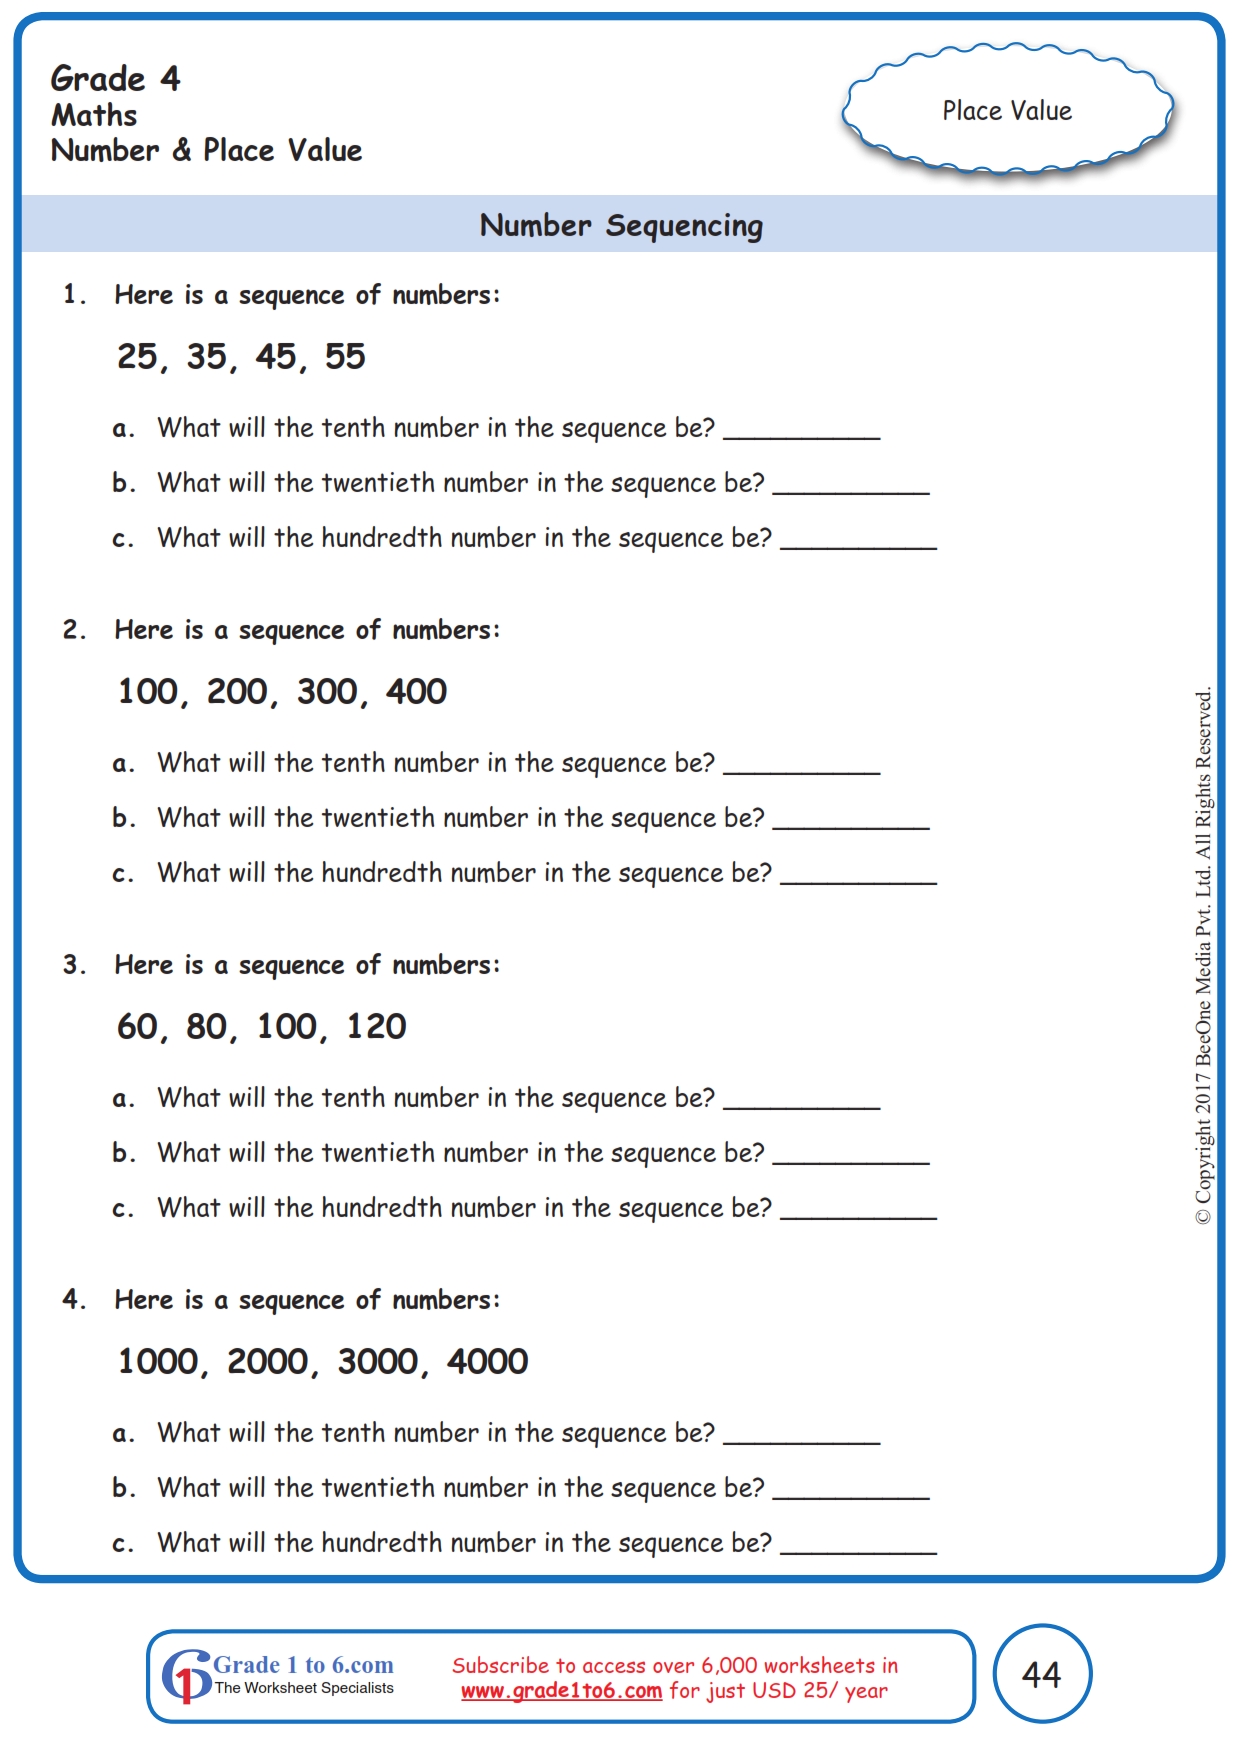 math-number-patterns-worksheets-grade-4-worksheets-for-kindergarten